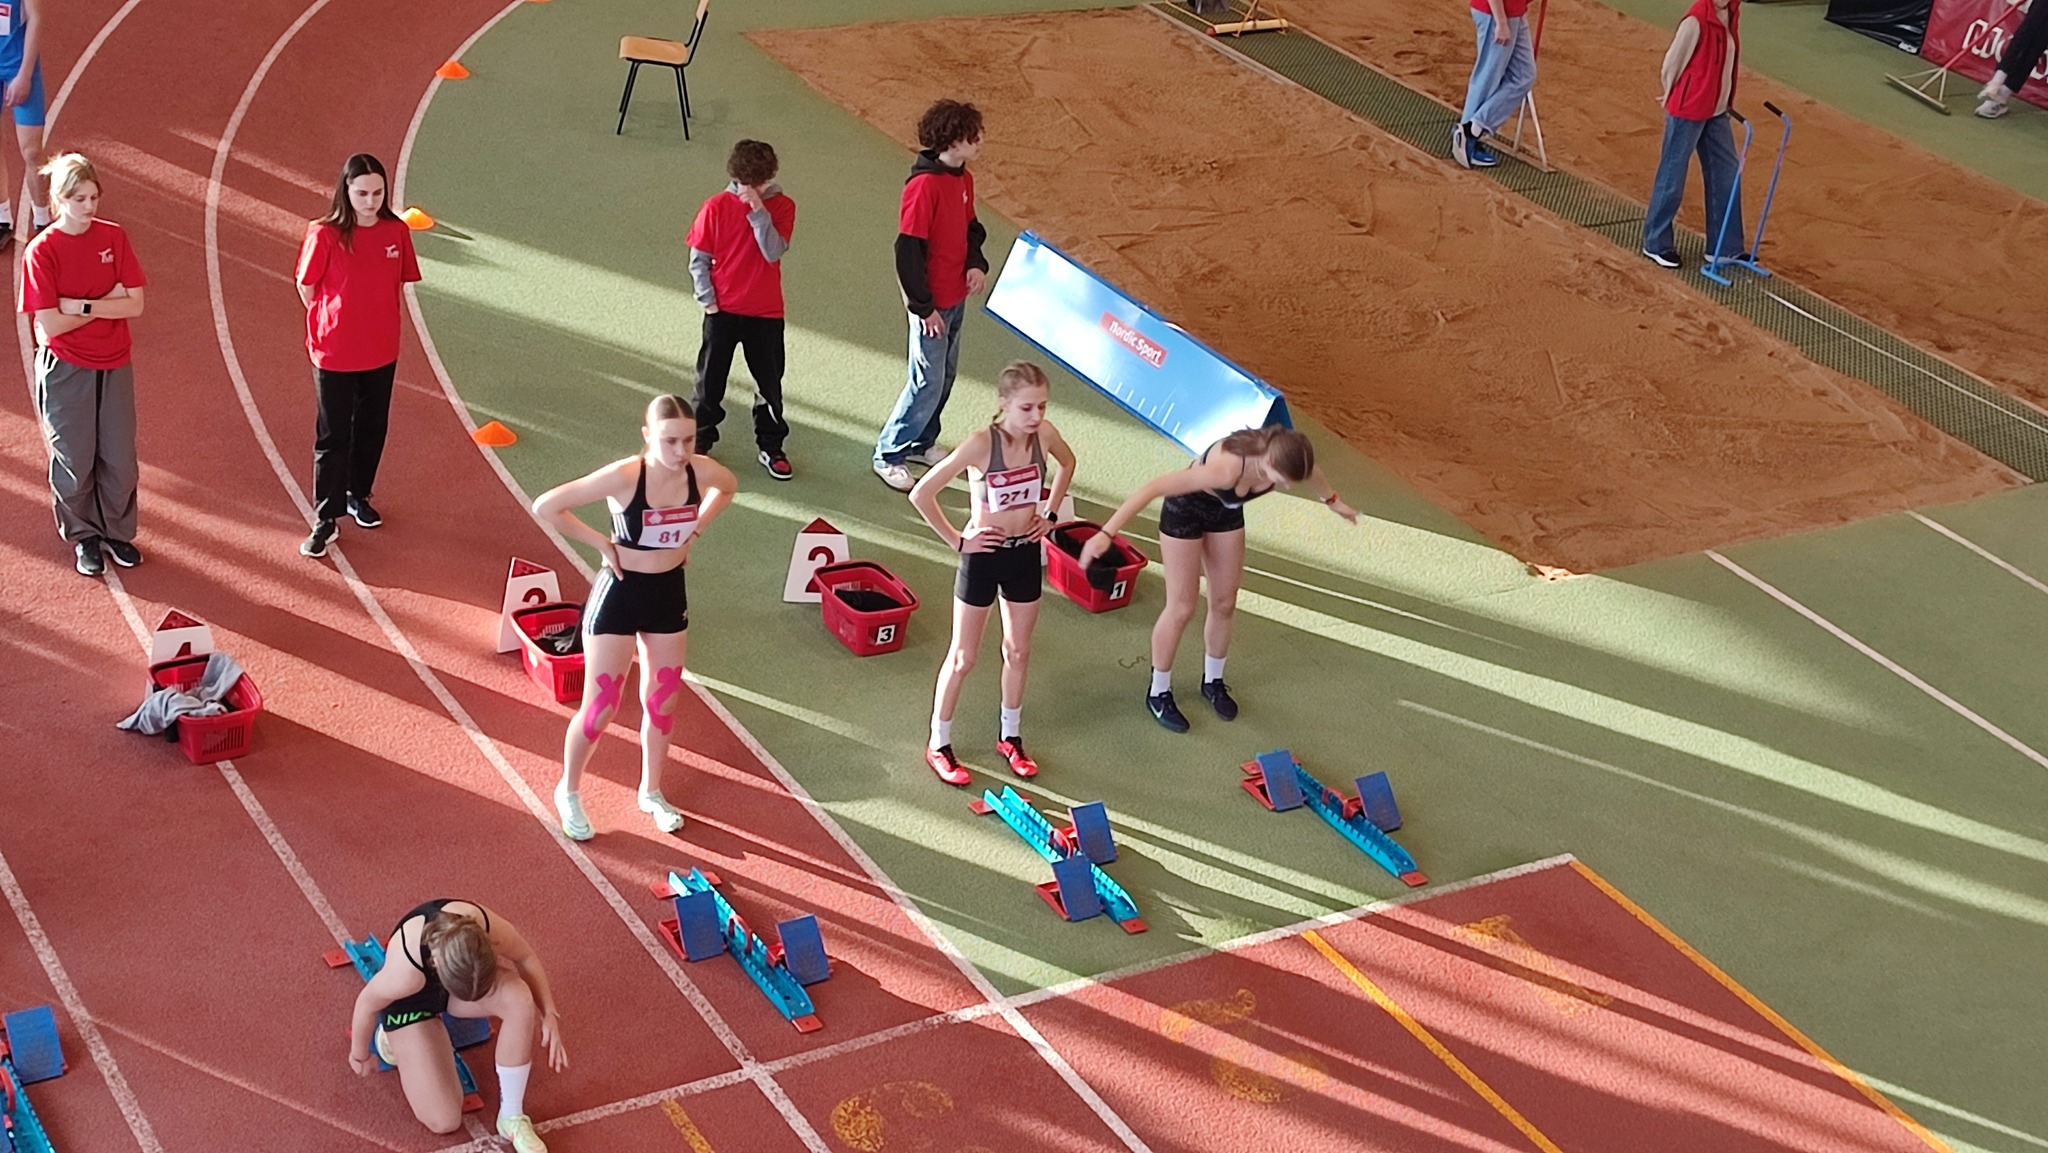 Jaunieji Utenos bėgikai ryškiai pasirodė Klaipėdos lengvosios atletikos čempionate